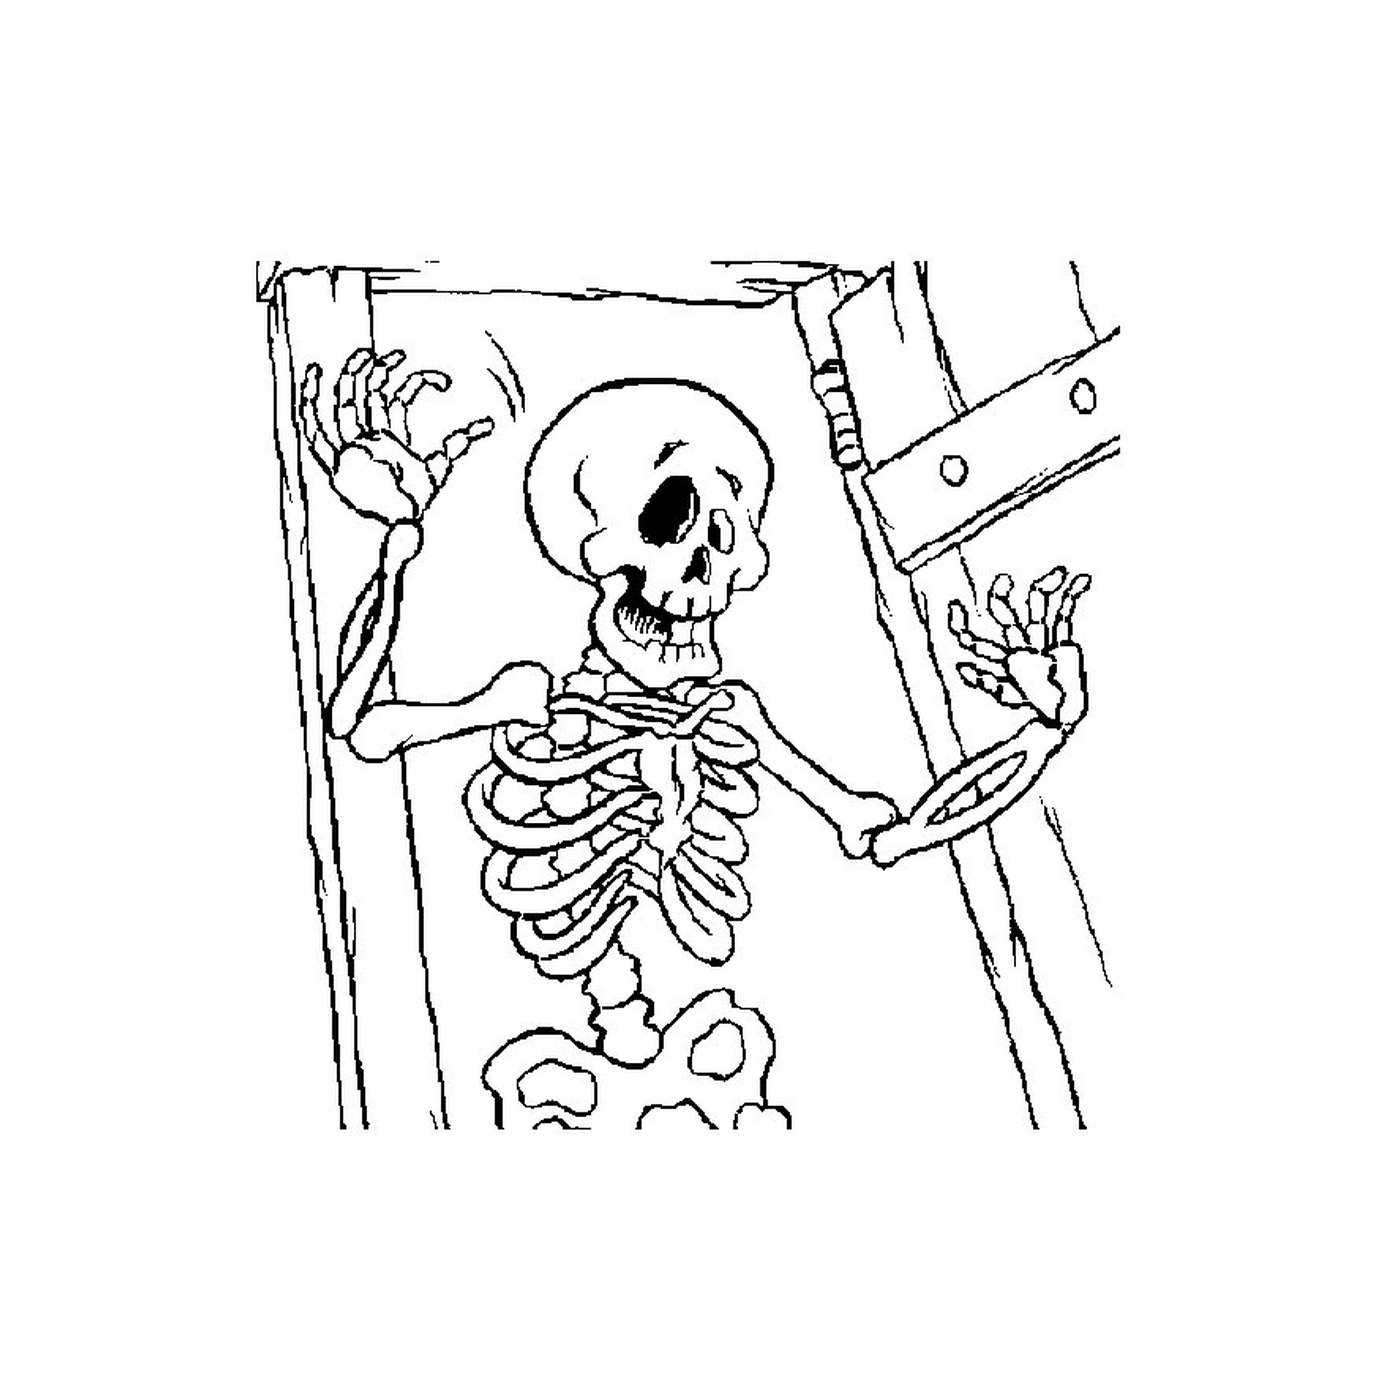  Skeleton in a dark room 